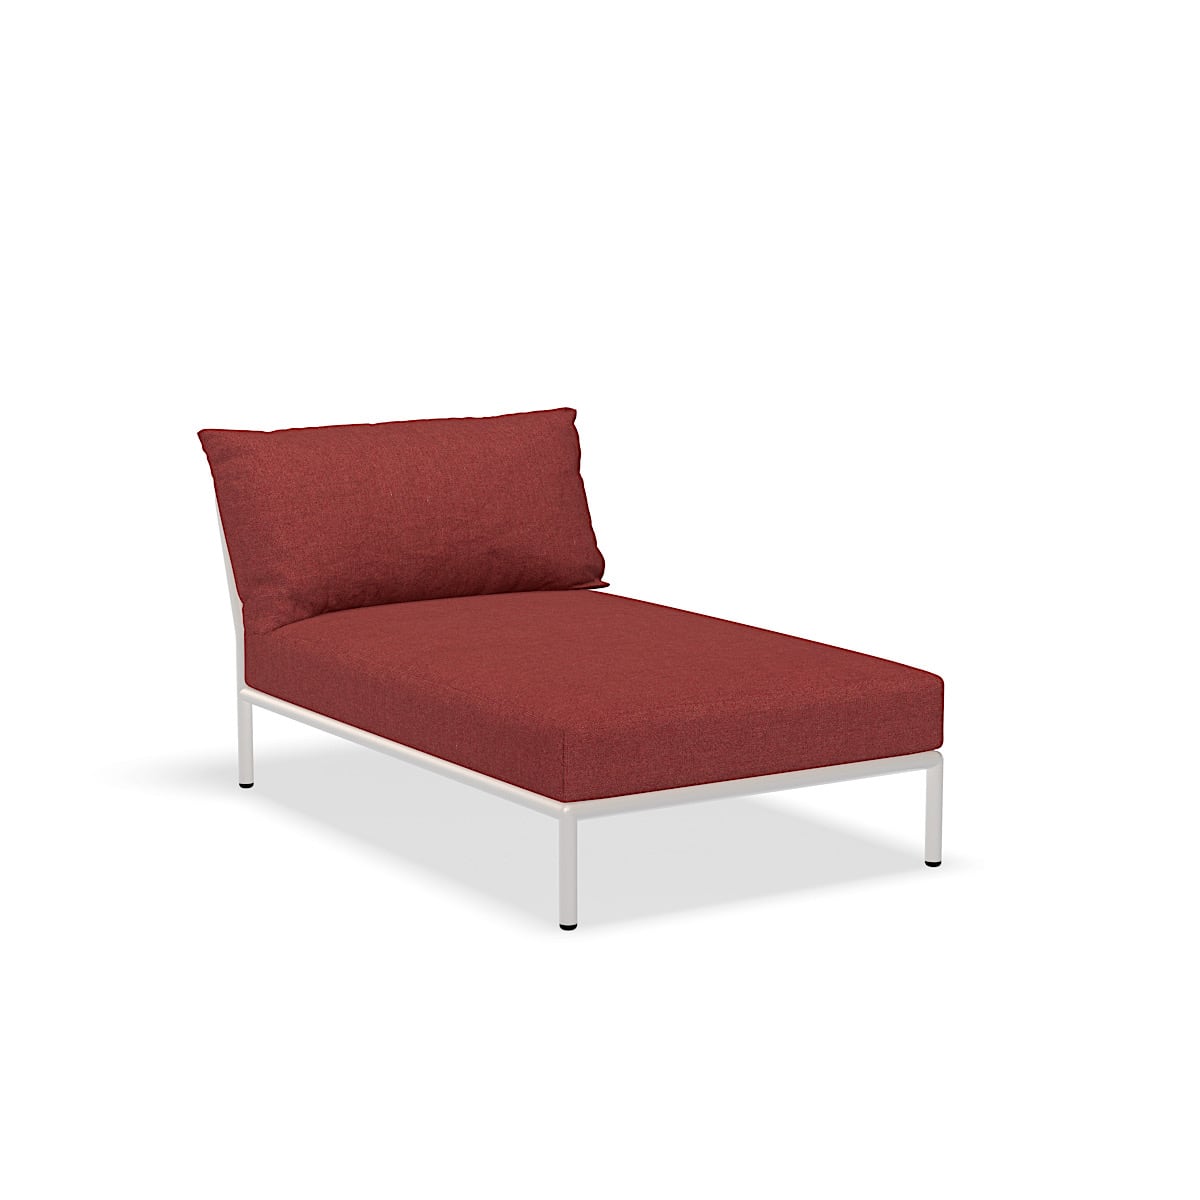 كرسي الصالة - 22209-1643 - كرسي صالة ، قرمزي (HERITAGE) ، هيكل أبيض